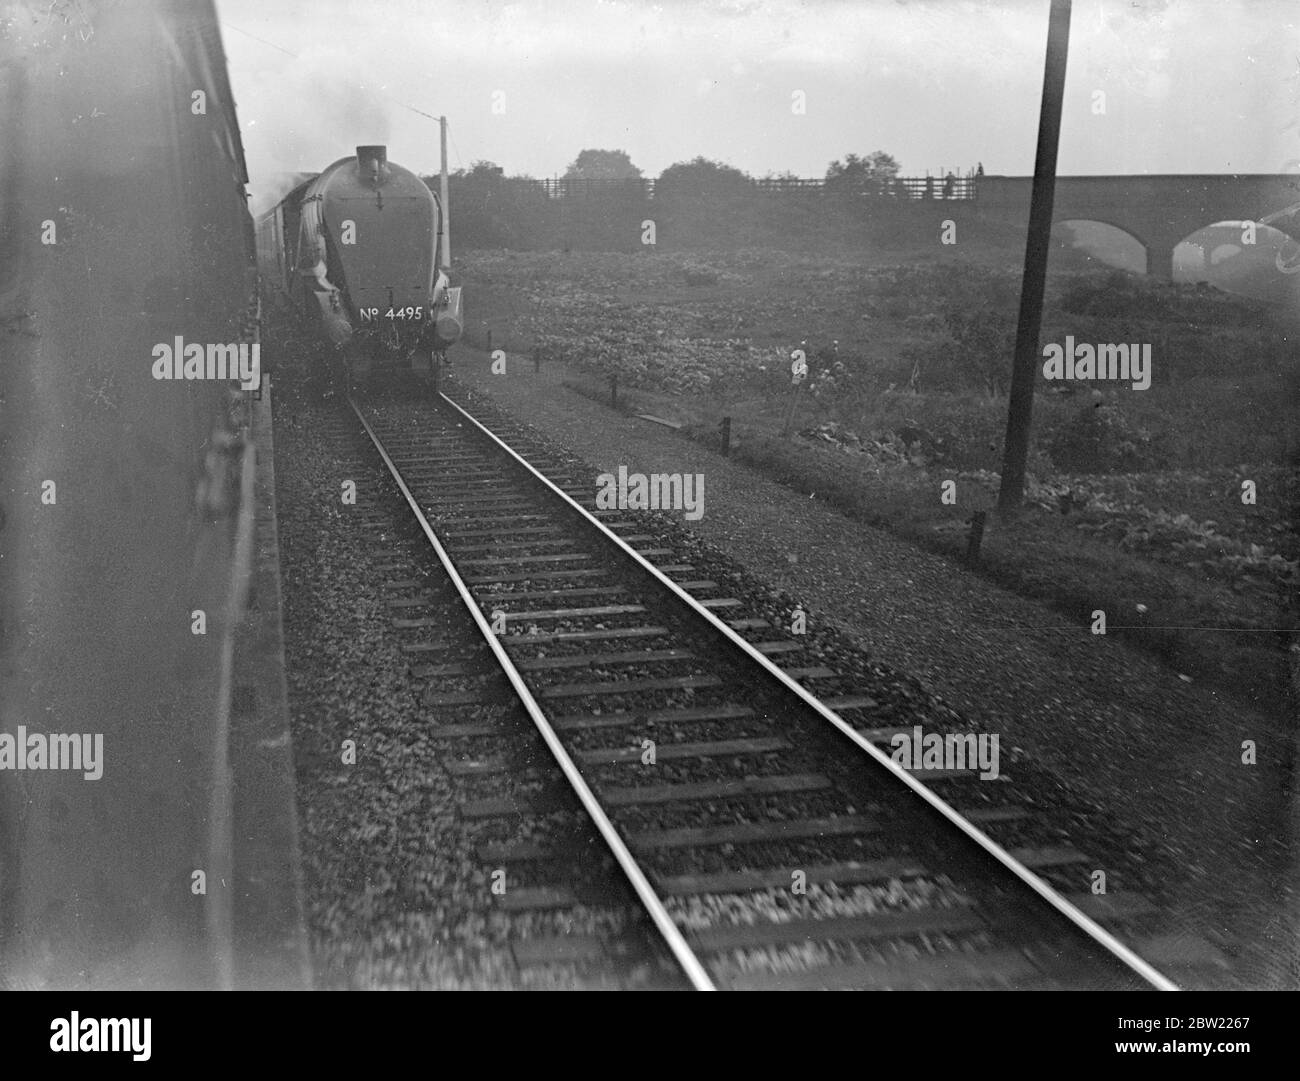 El tren rápido que operará entre Londres y Leeds, el nuevo West Riding Limited hizo una prueba de carrera desde King's Cross a Leeds, una carrera sin parada de 185 millas en la que era tiempo de promedio 68 millas por hora con la máxima velocidad en la región de 75. El tren que pasa por Retford, Nottingham en su carrera de prueba. 24 de septiembre de 1937 Foto de stock